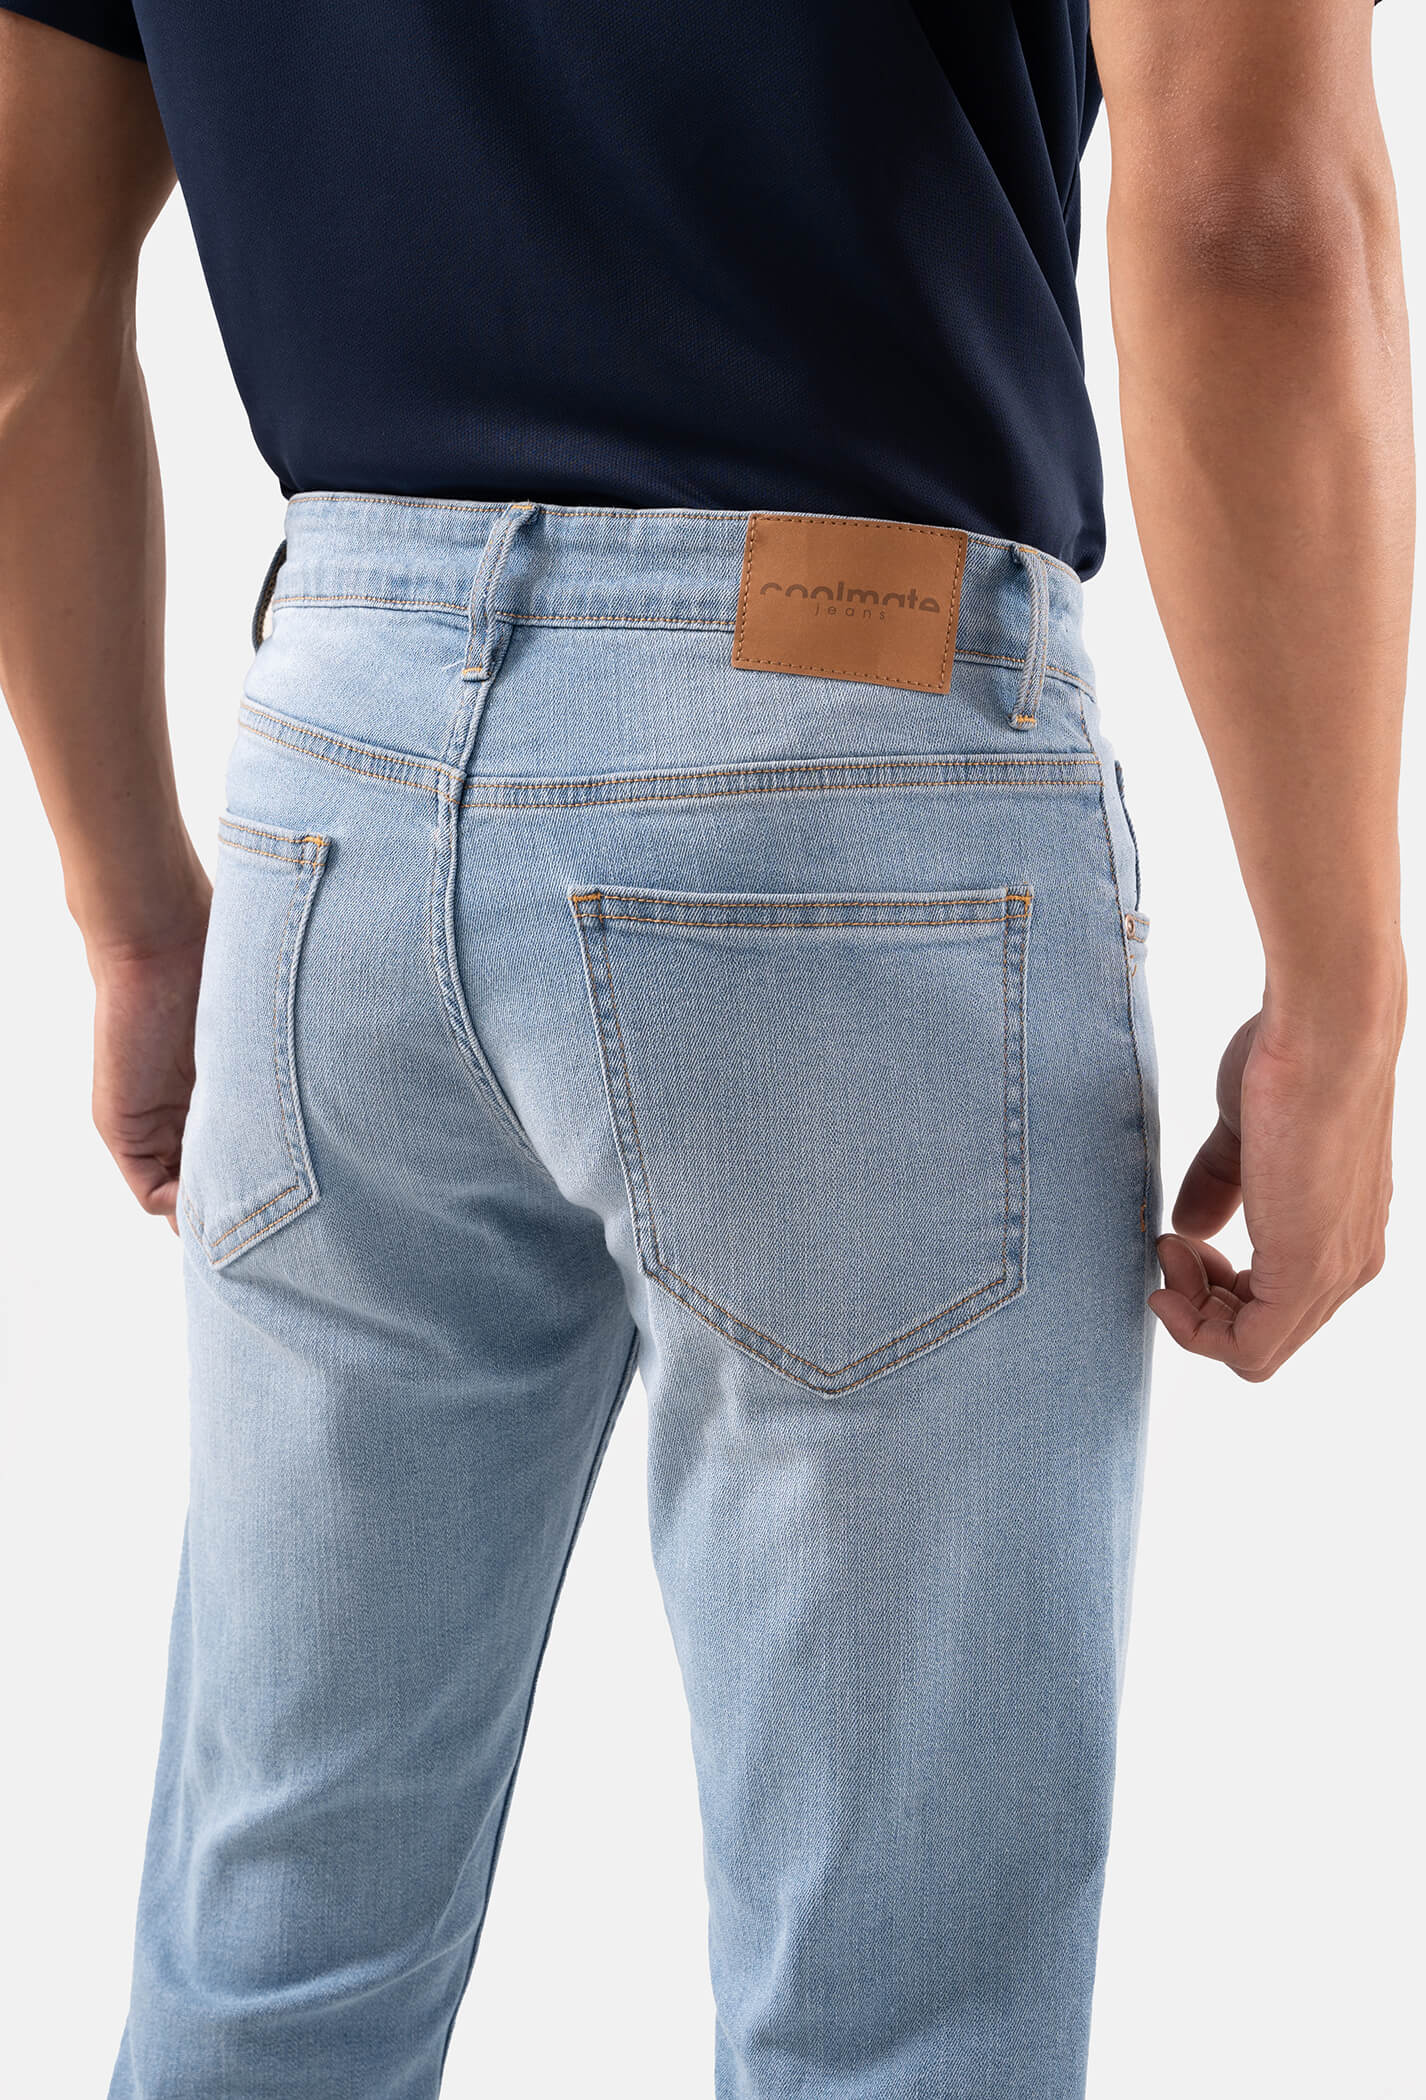 Quần Jeans Basic Slimfit xé gối - màu Xanh nhạt  7